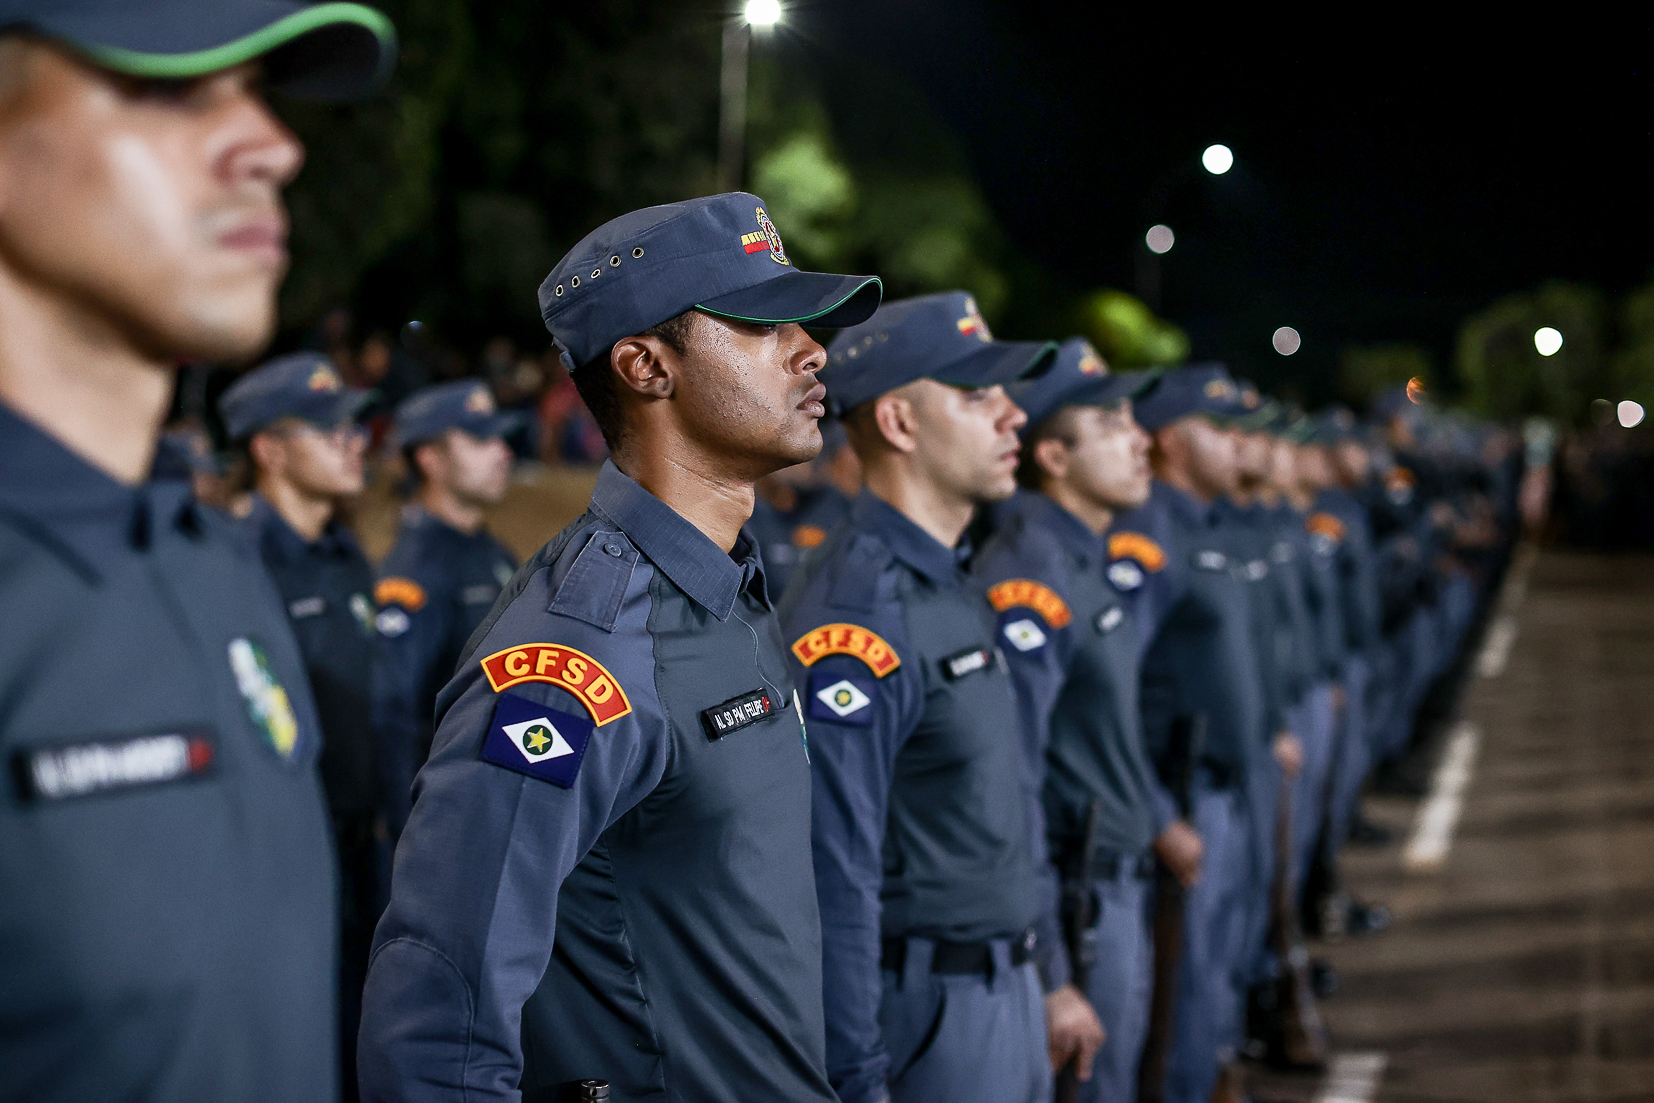 PMMT treina 551 novos policiais para atuarem na segurança da população a partir de 2024